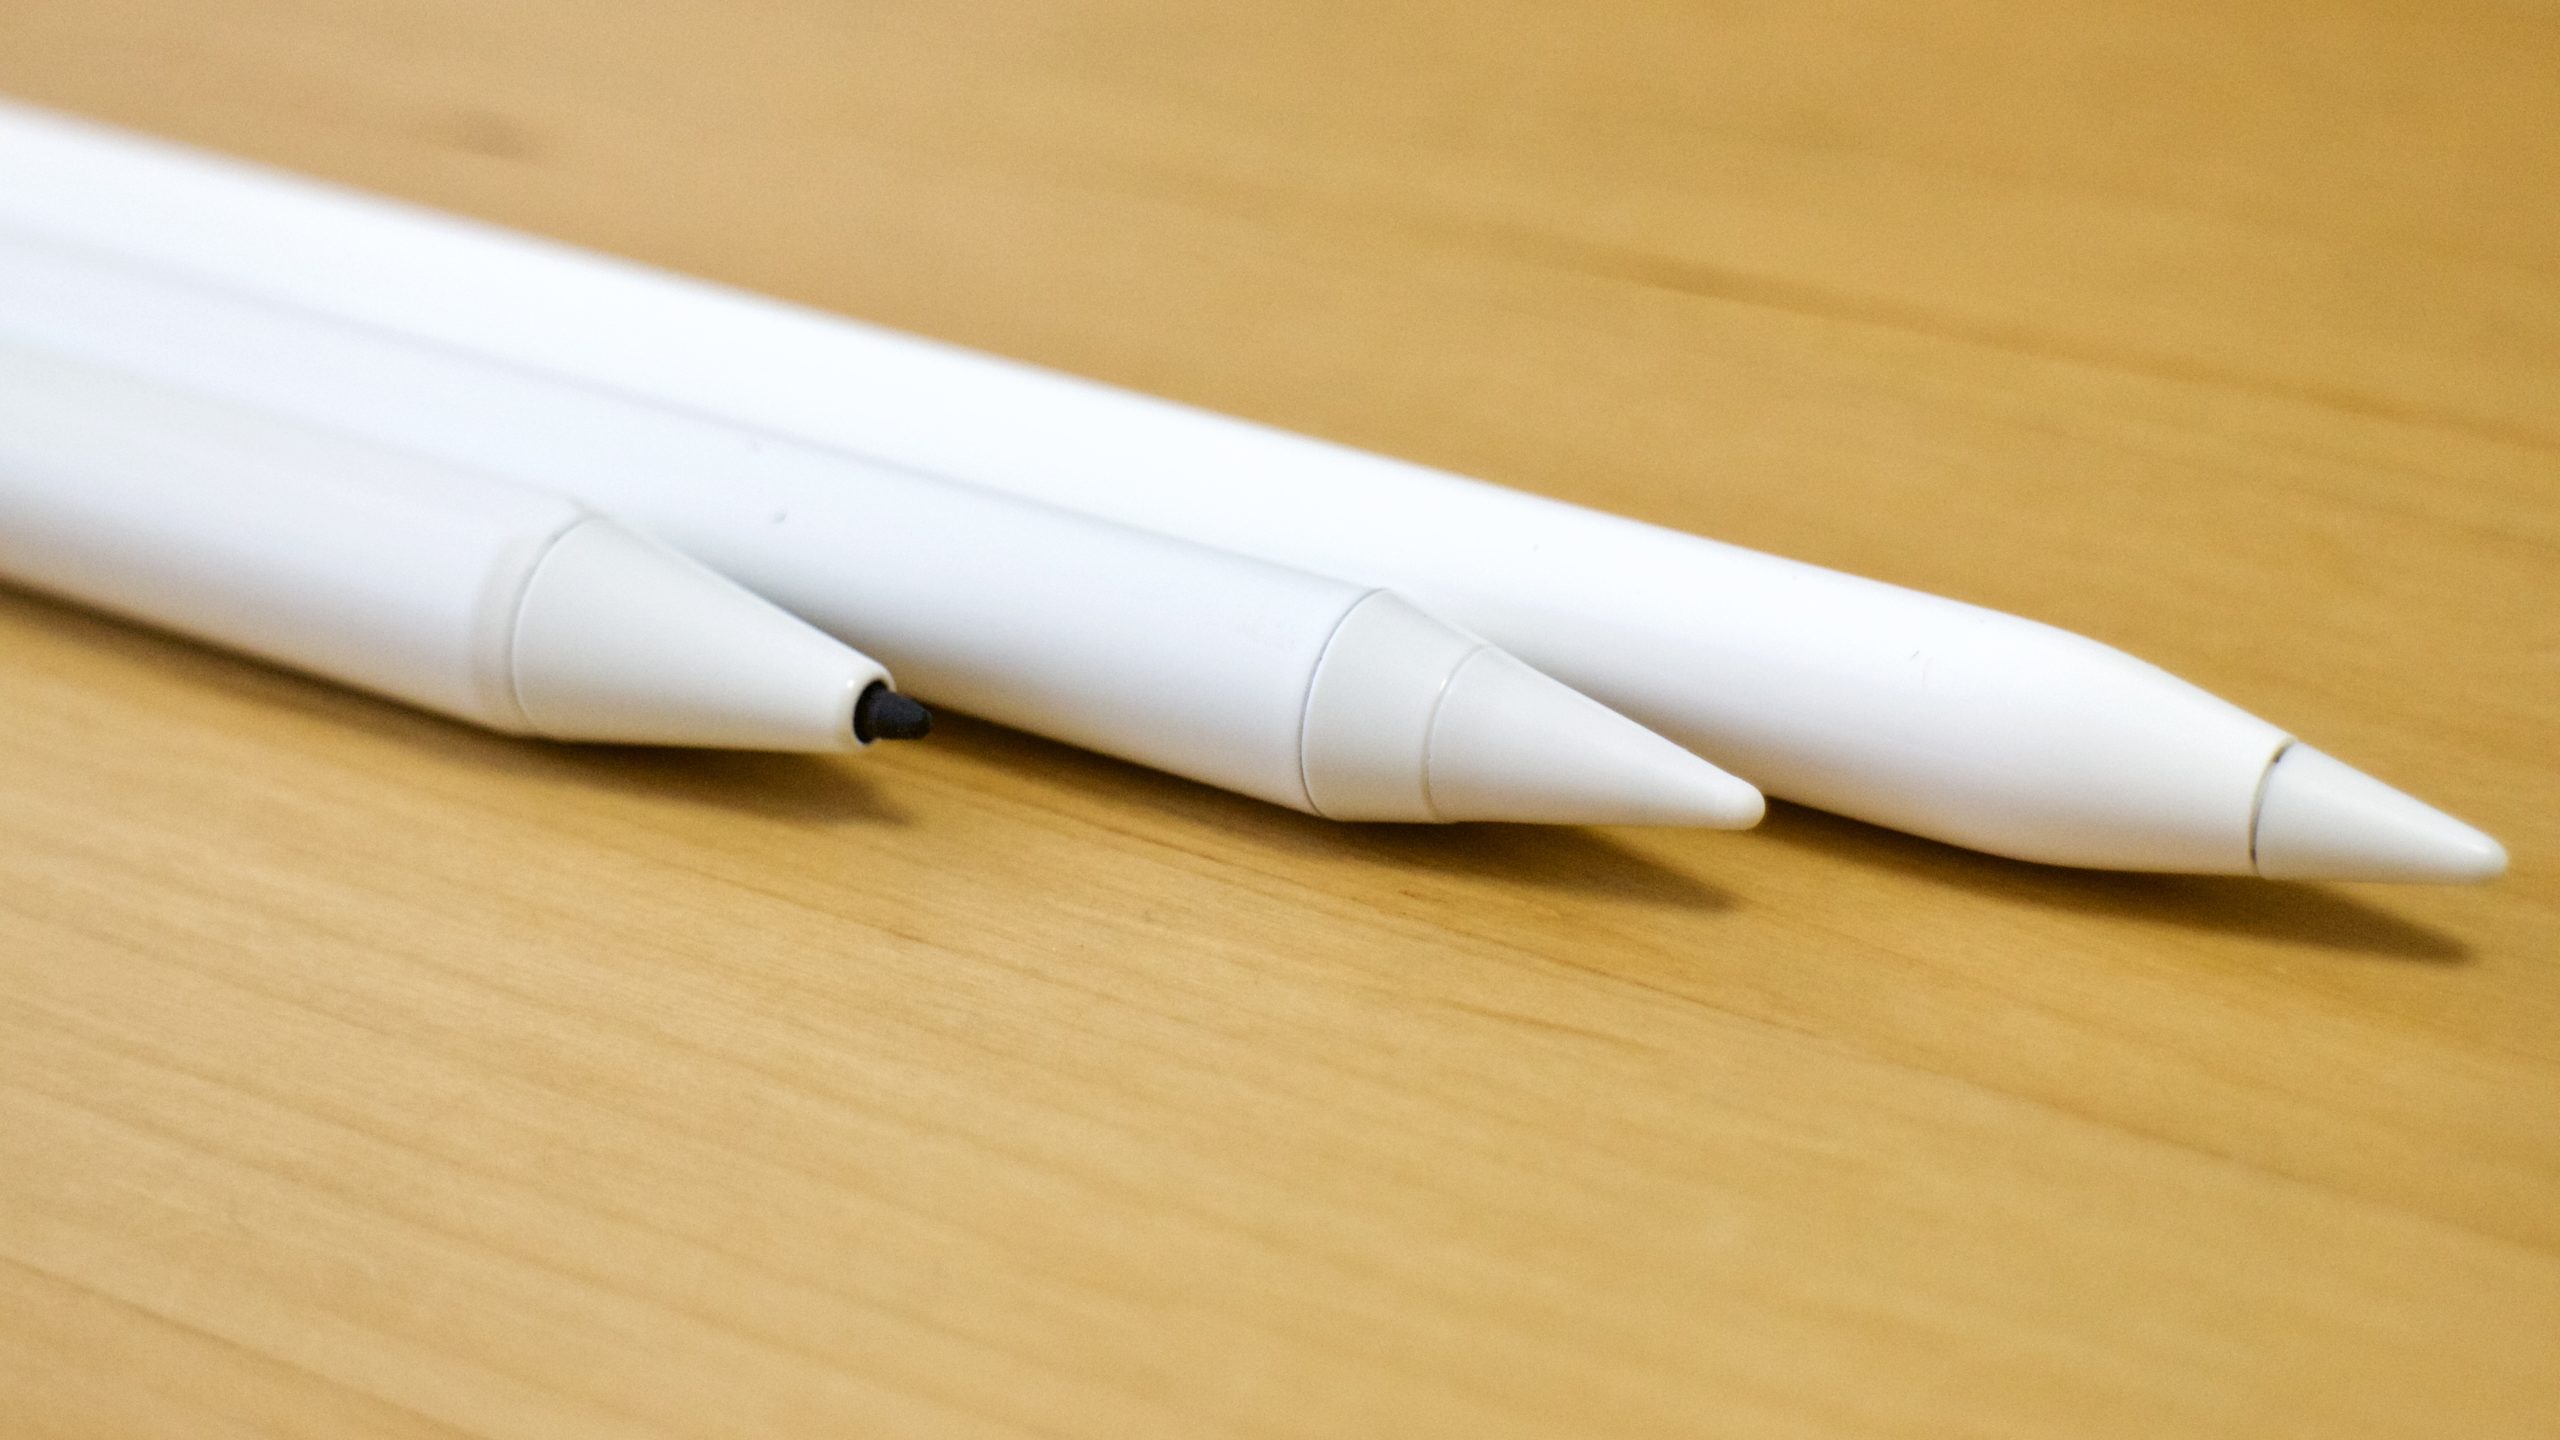 3個入】Apple Pencil ペン先 チップ アップルペンシル キャップ 交換用ペン先 芯 IPad Pro Mini 第一世代 第二世代  第1世代 第2世代 ホワイト 白 :3c-gd0049:QUEEN ROCK 通販 | ❤交換用ペン先3つ付属❣アップルペンシルのペン先と同素材を採用♪❤タッチペン  | hayek.sk